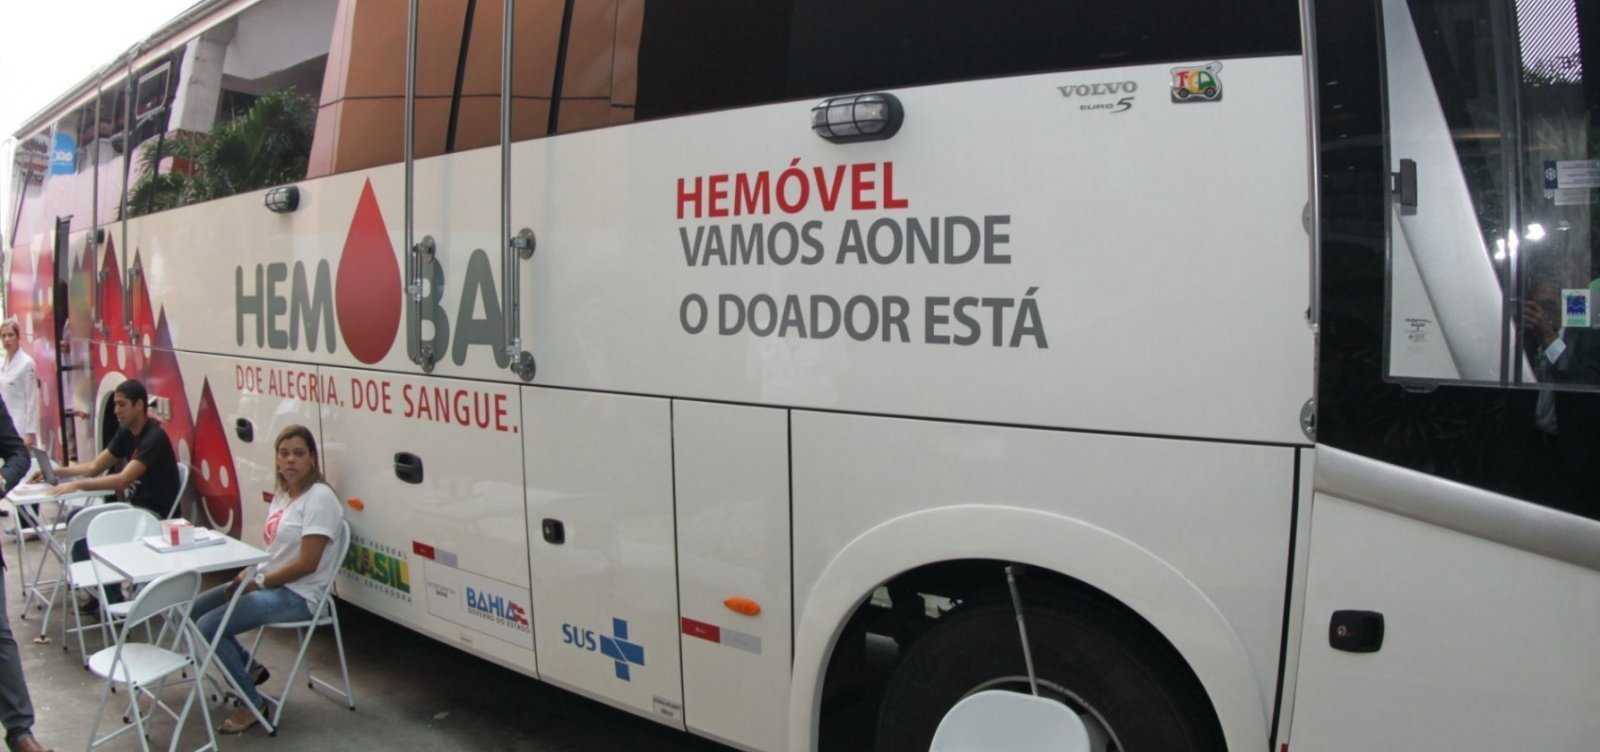 Hemóvel realiza coleta de sangue em Salvador e Feira de Santana nesta semana